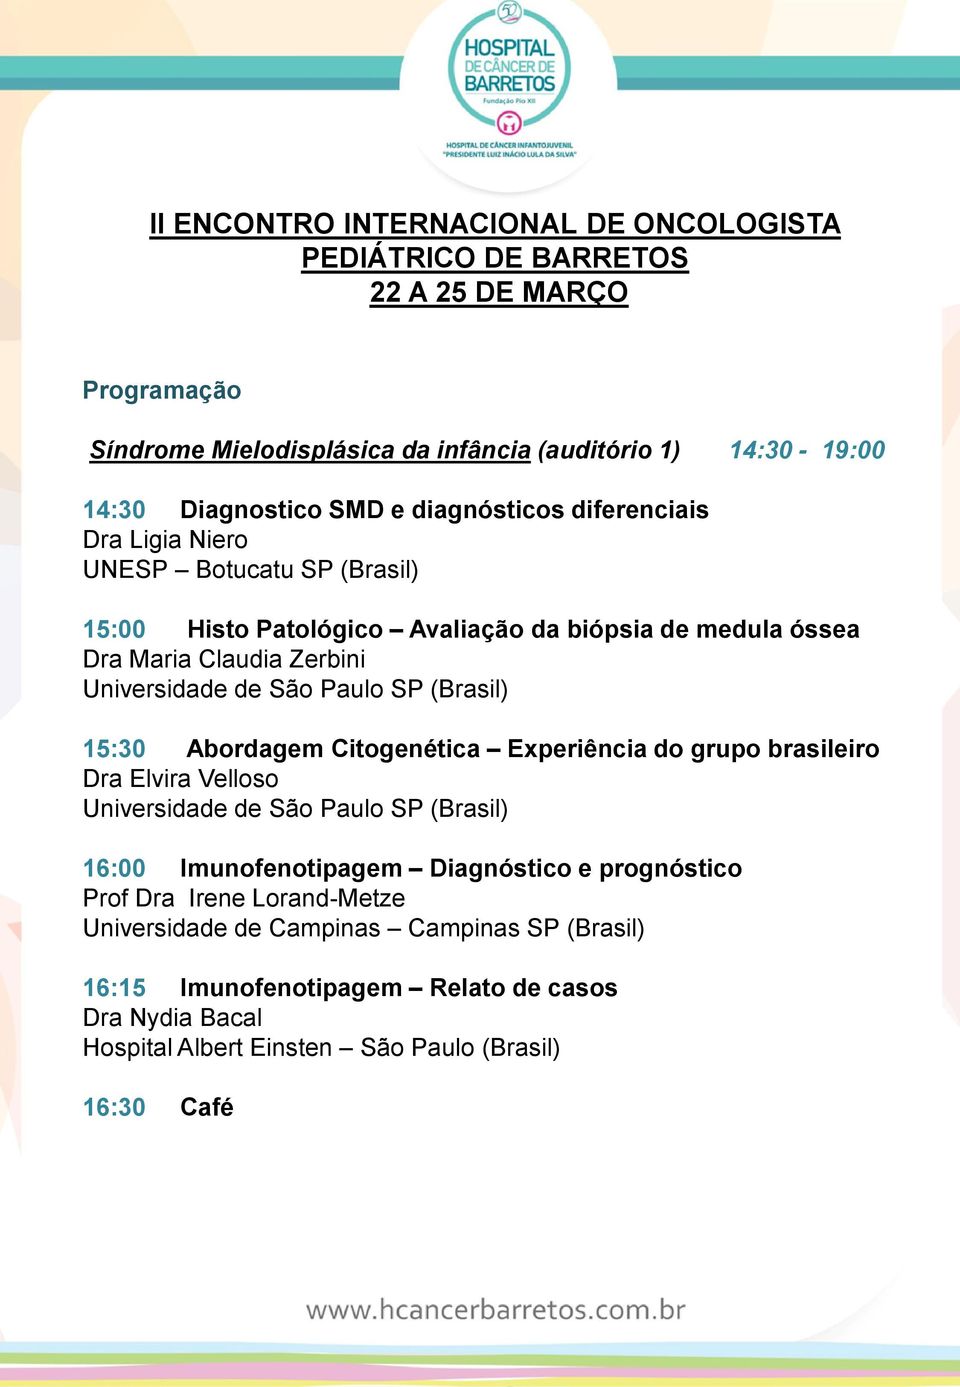 Experiência do grupo brasileiro Dra Elvira Velloso Universidade de São Paulo SP (Brasil) 16:00 Imunofenotipagem Diagnóstico e prognóstico Prof Dra Irene